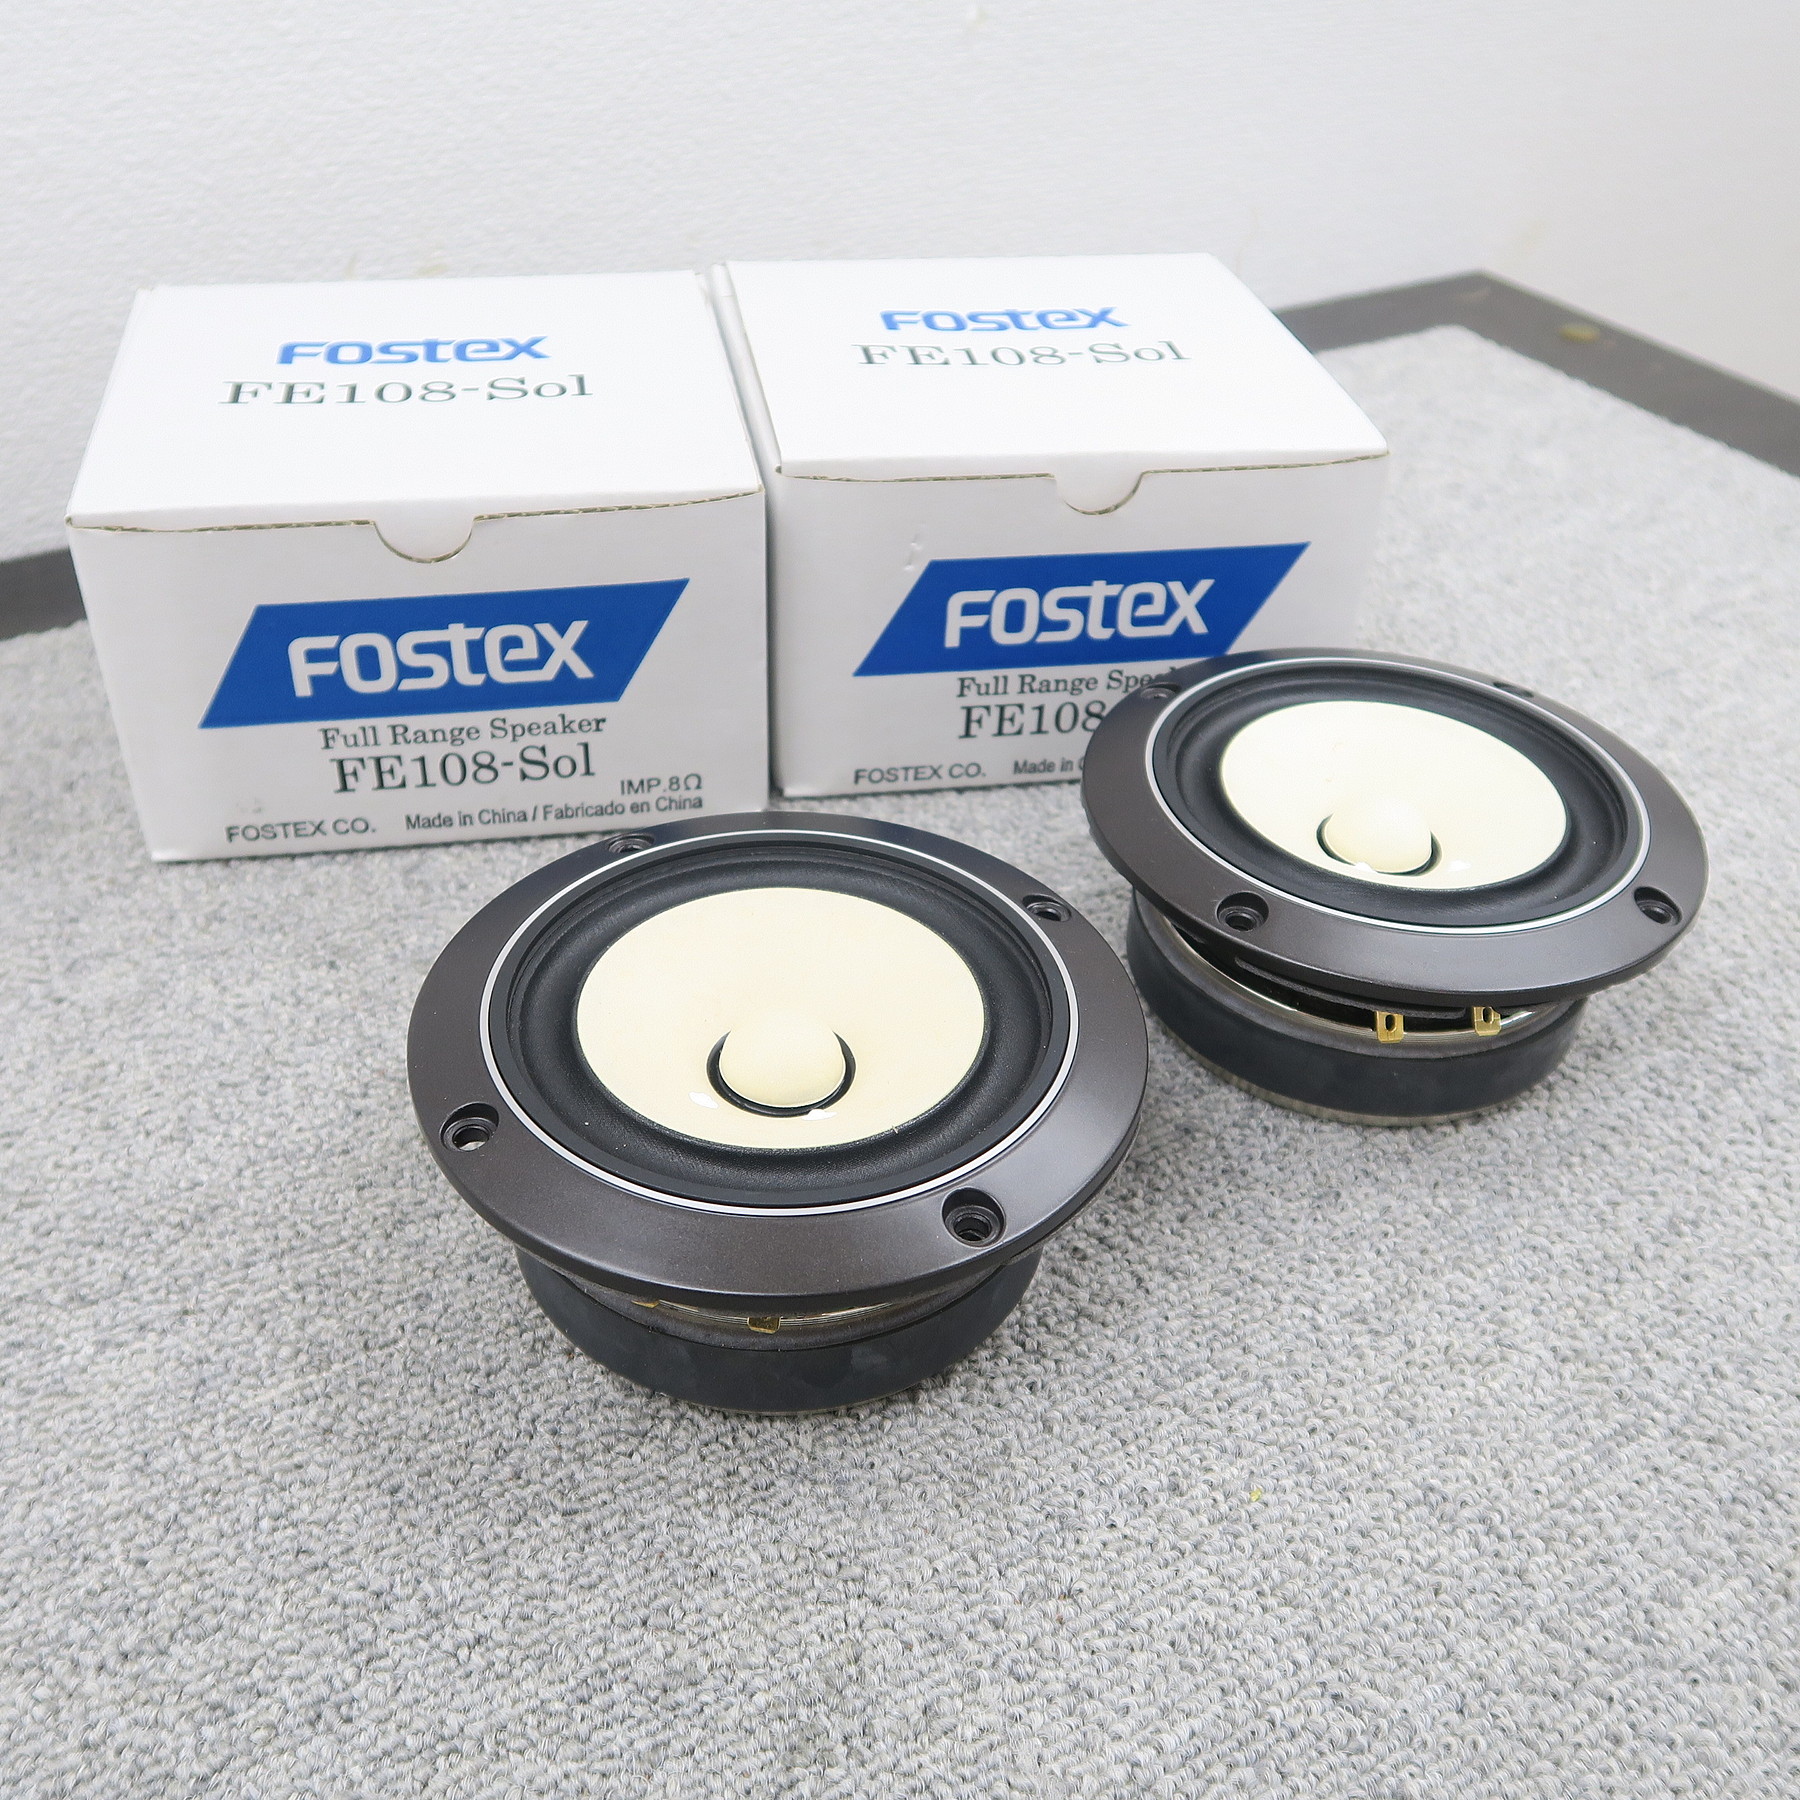 FOSTEX FE108-sol ペア フルレンジユニット - スピーカー